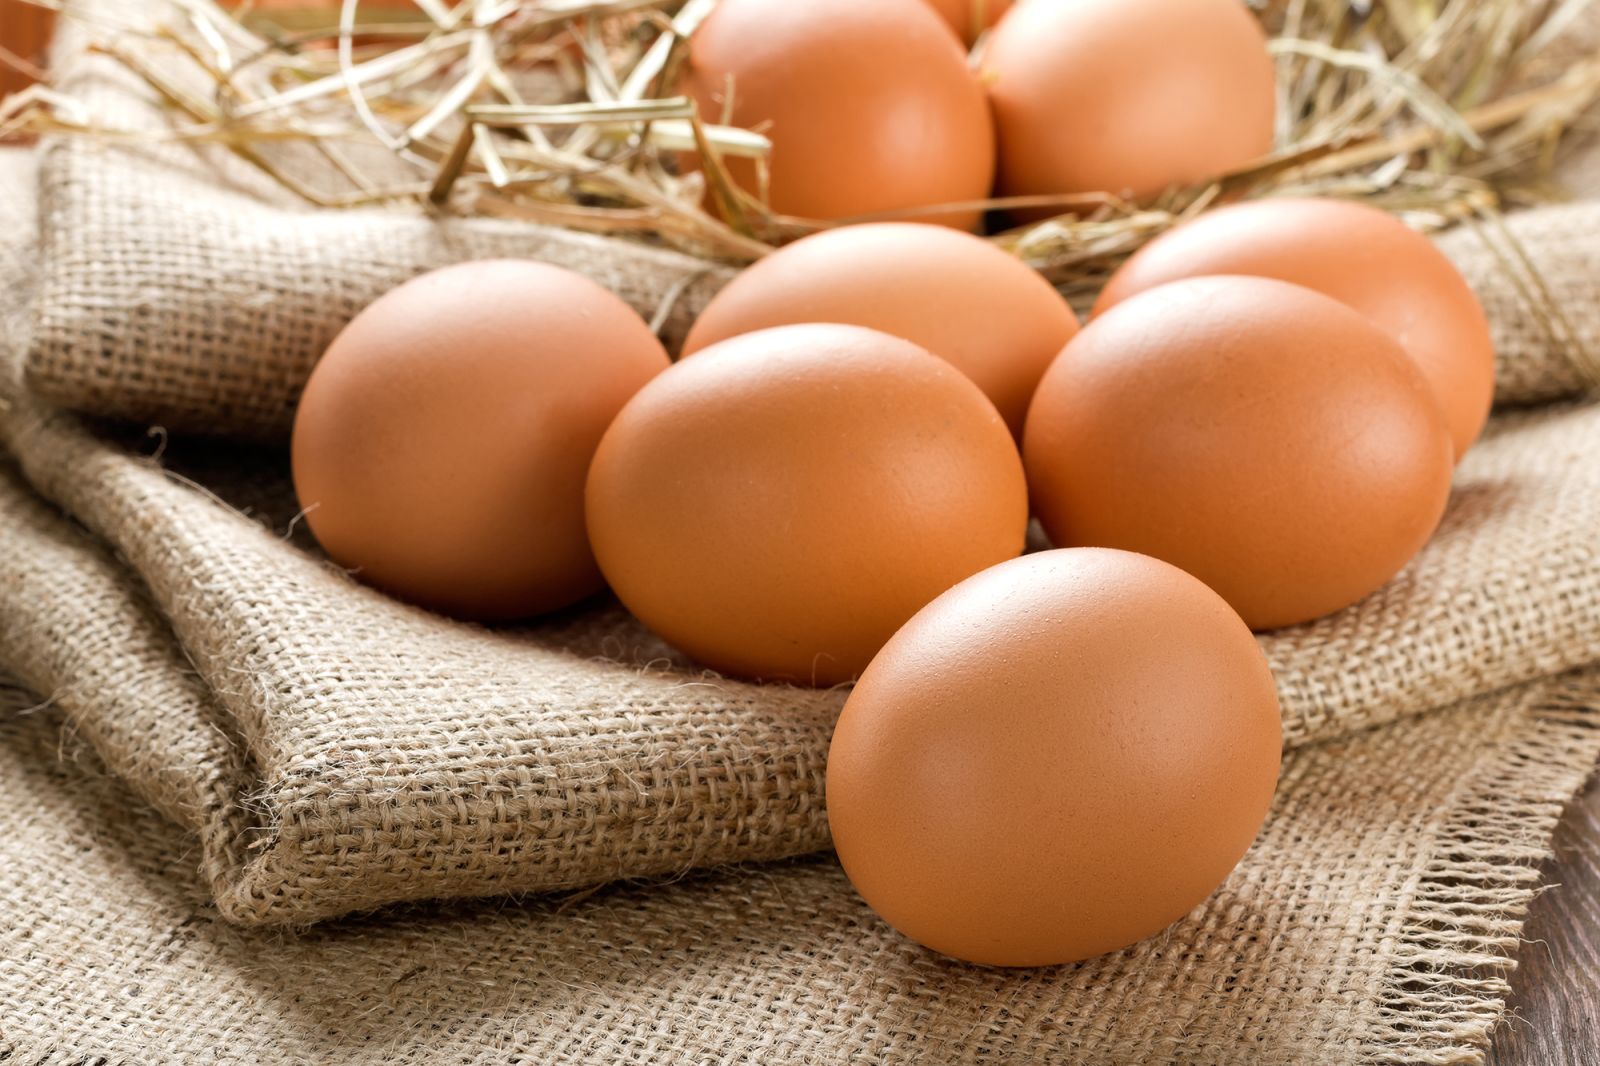 Trứng chứa protein rất tốt giúp tạo nên đạm và phát triển cơ bắp